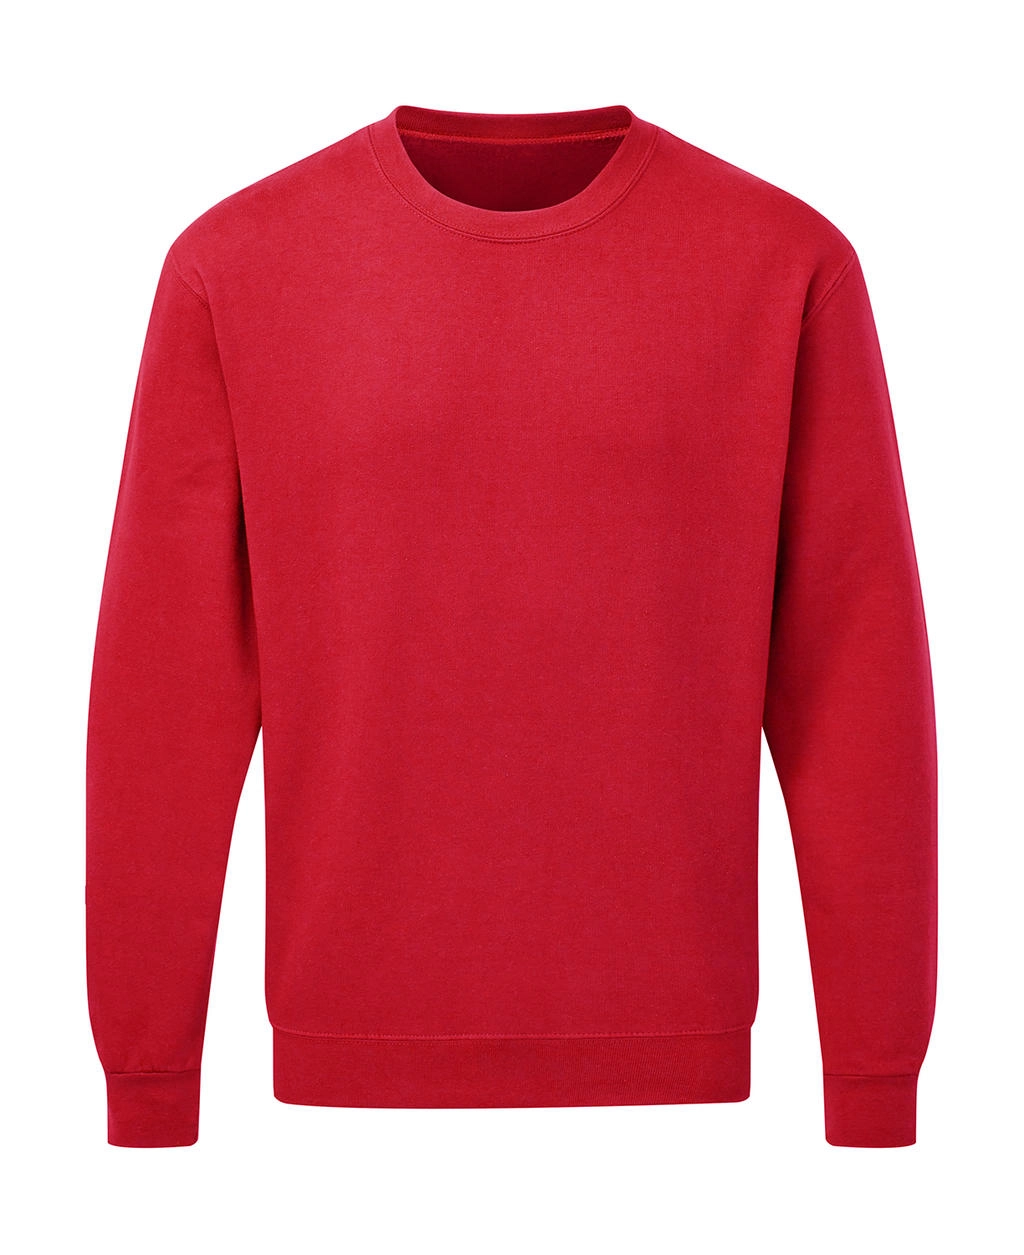 Crew Neck Sweatshirt Men zum Besticken und Bedrucken in der Farbe Red mit Ihren Logo, Schriftzug oder Motiv.